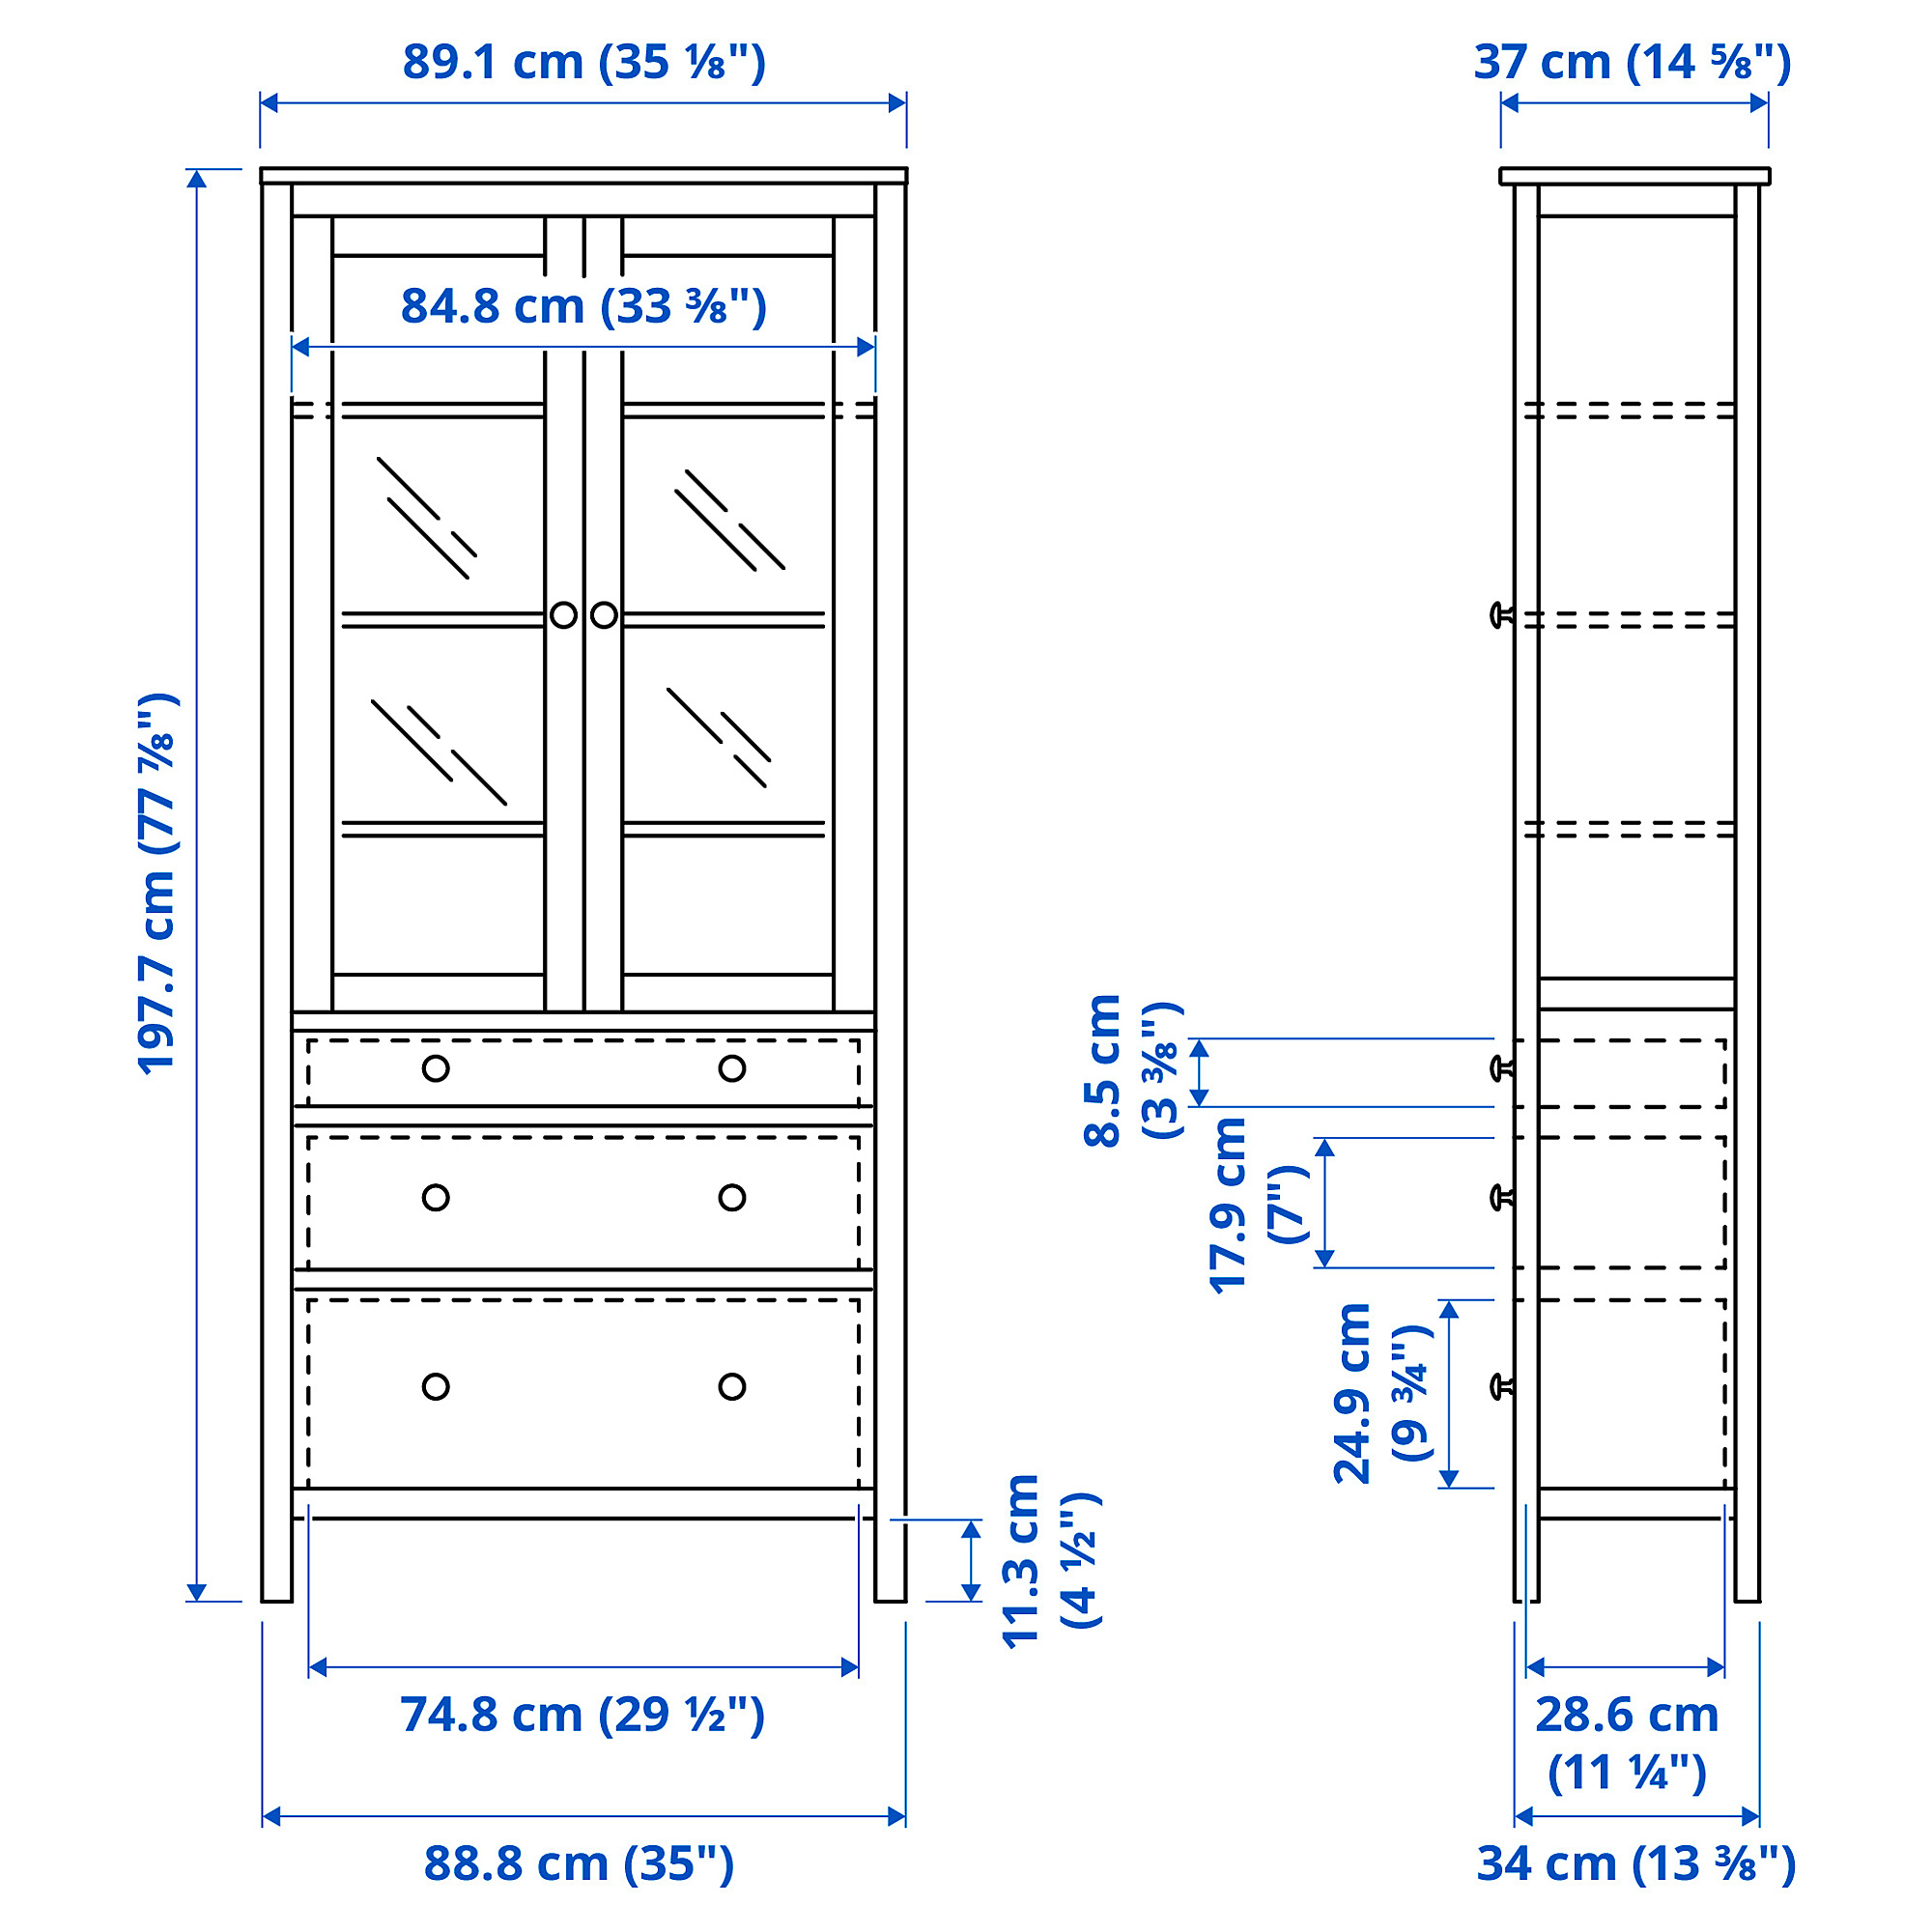 HEMNES glass-door cabinet with 3 drawers